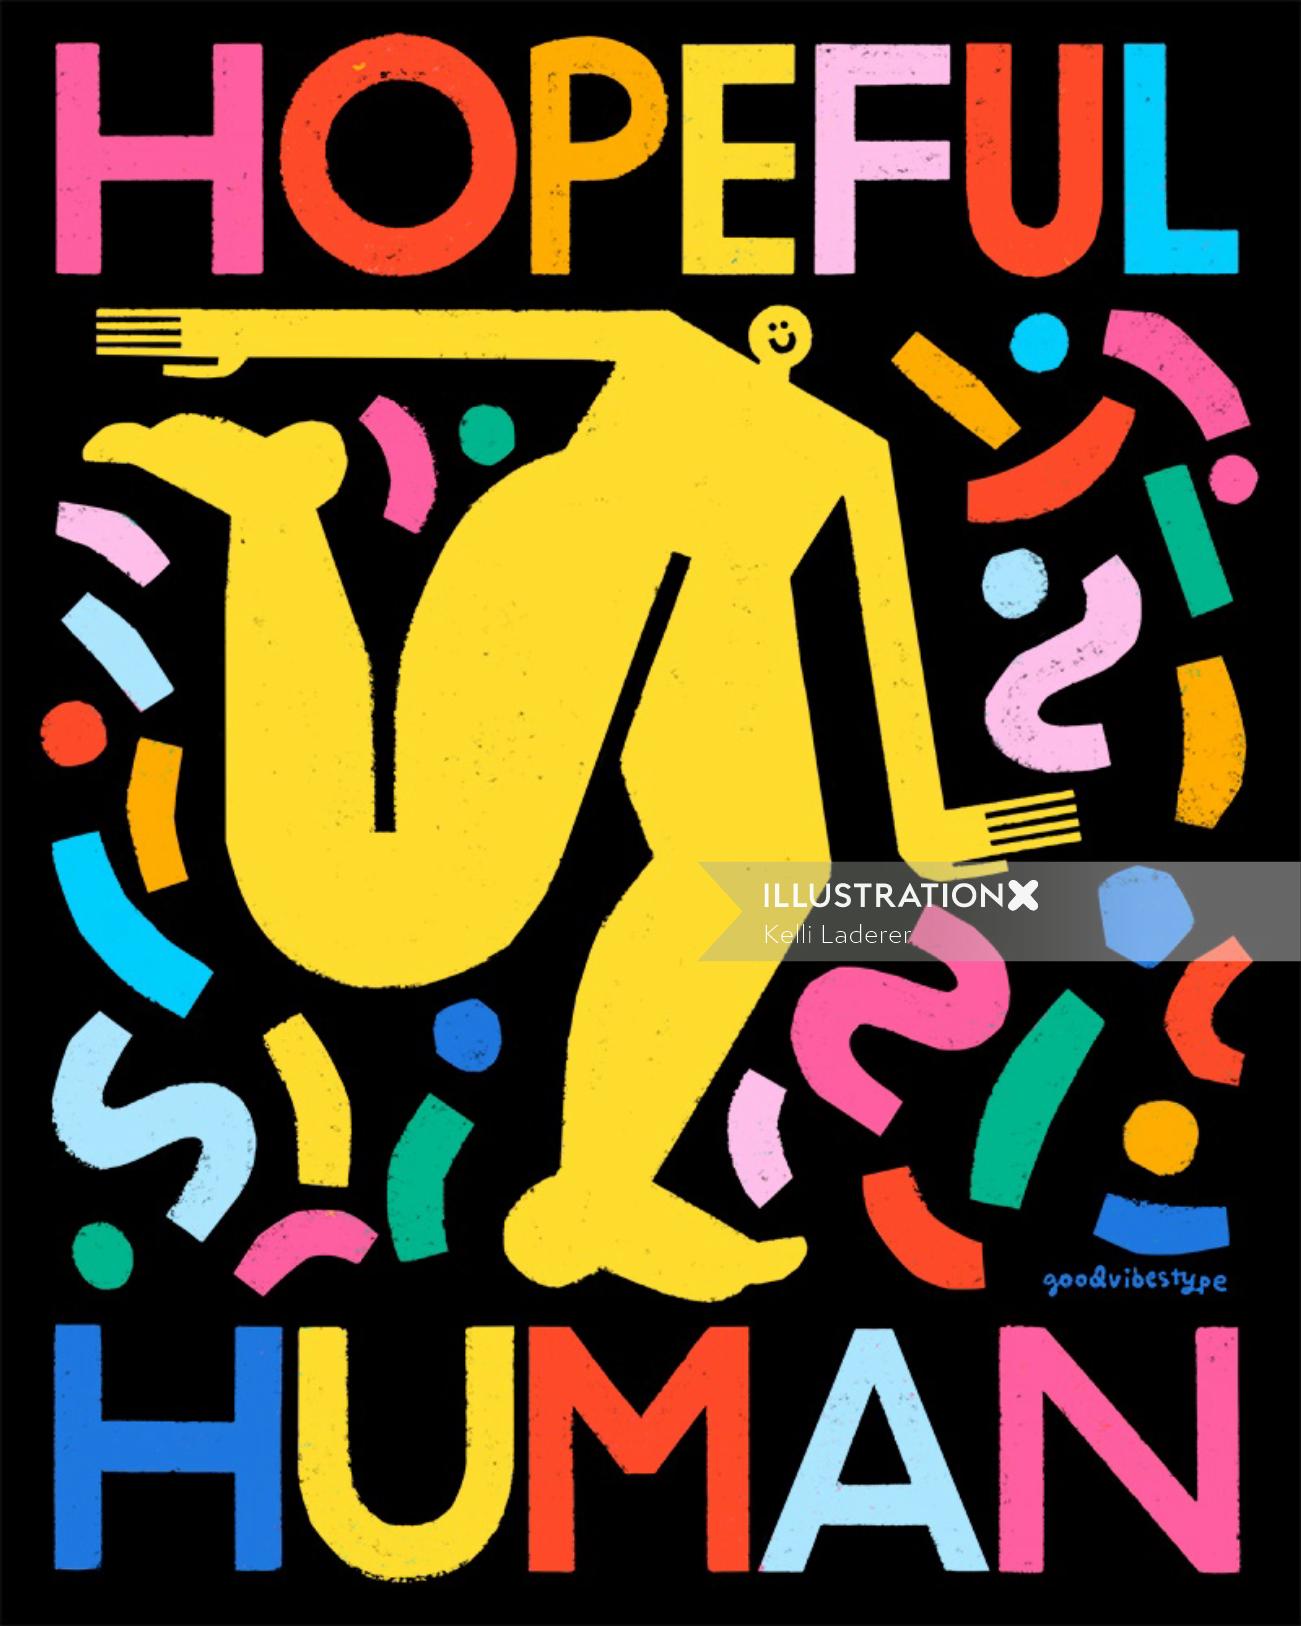 Letras de arte de esperanza humana